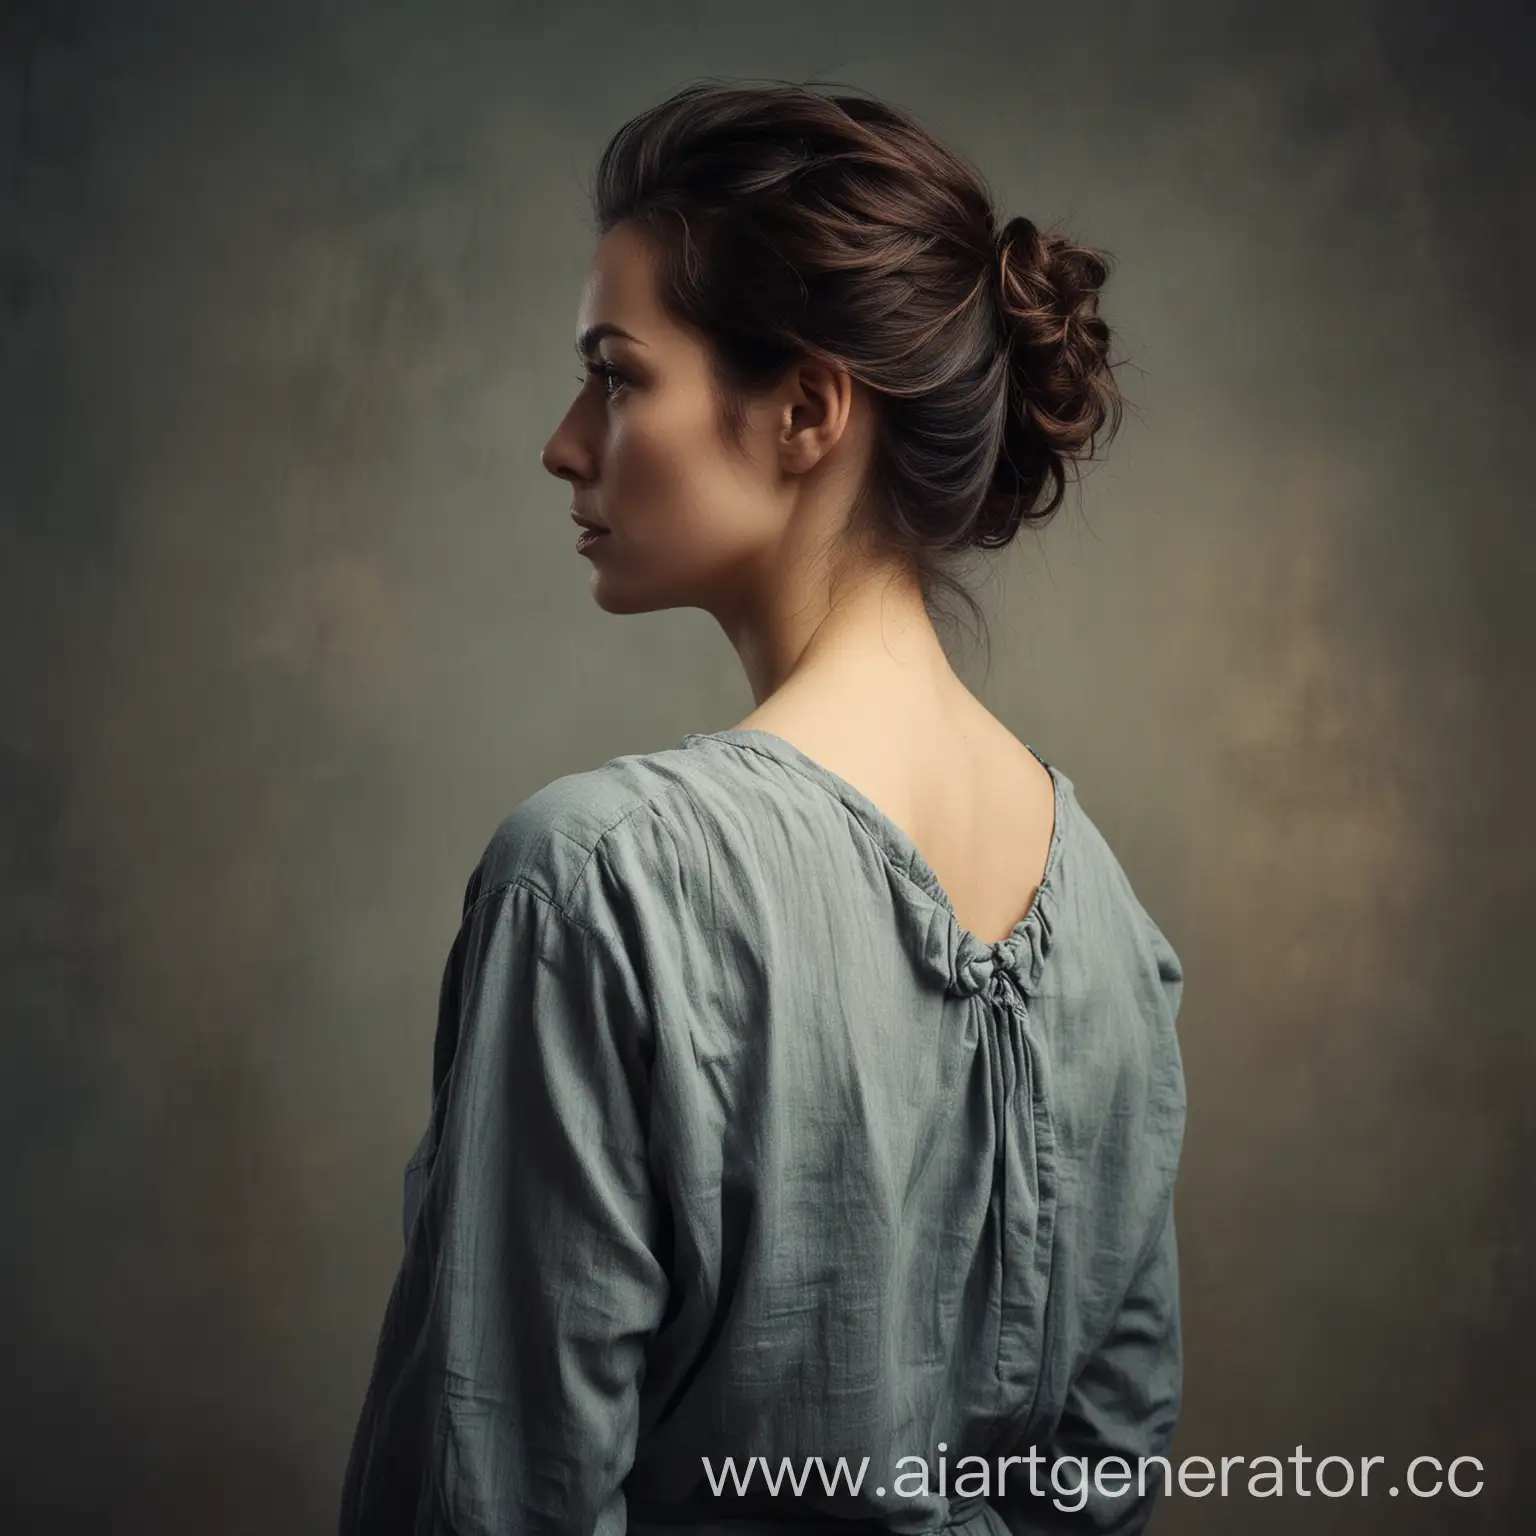 мрачный фон по центру женщина стоит спиной и смотрит в камеру в стиле портрета